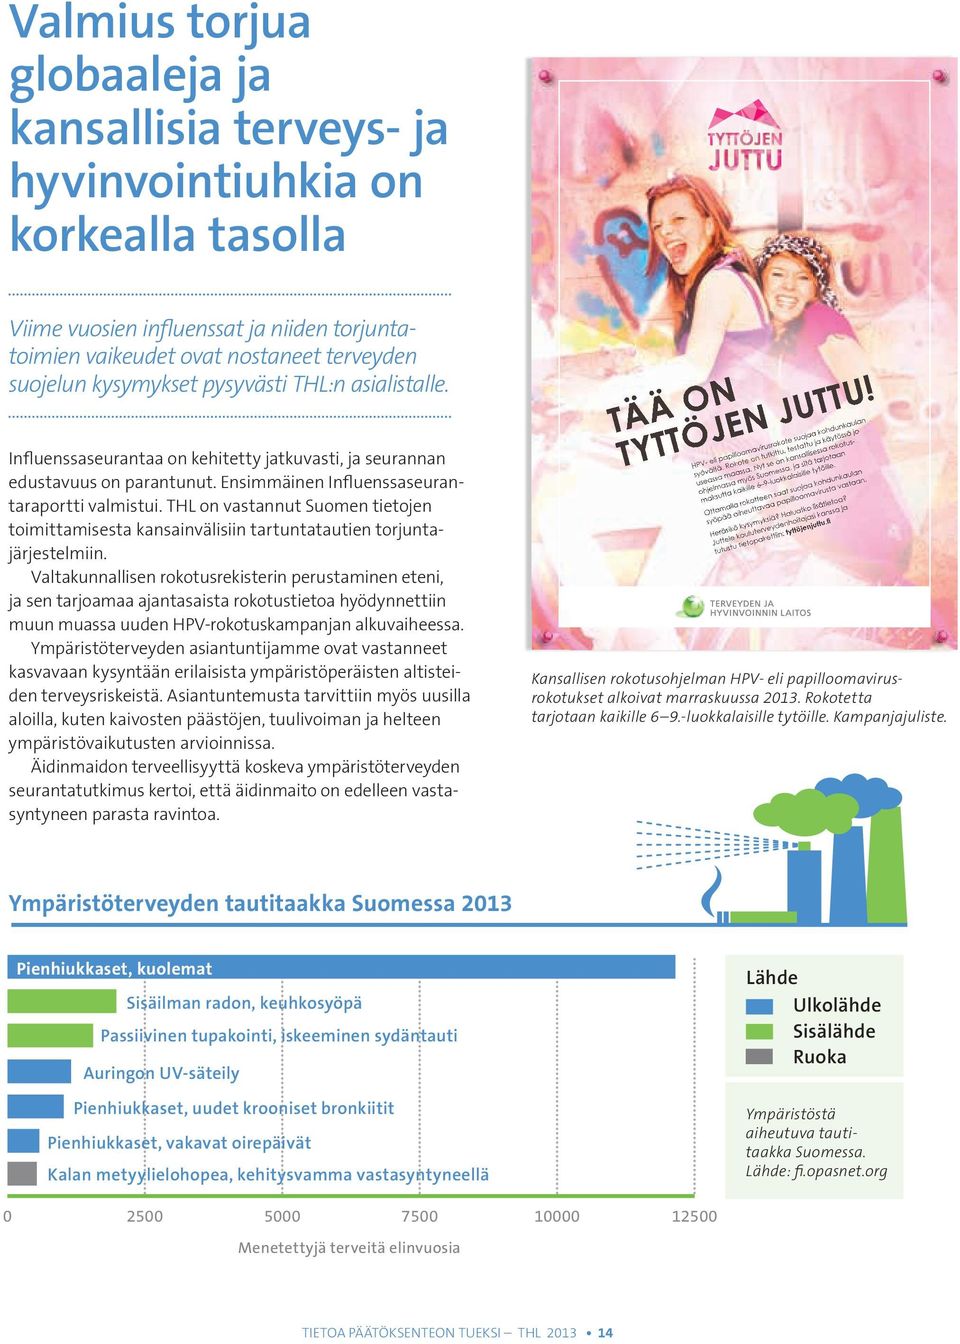 THL on vastannut Suomen tietojen toimittamisesta kansainvälisiin tartuntatautien torjuntajärjestelmiin.